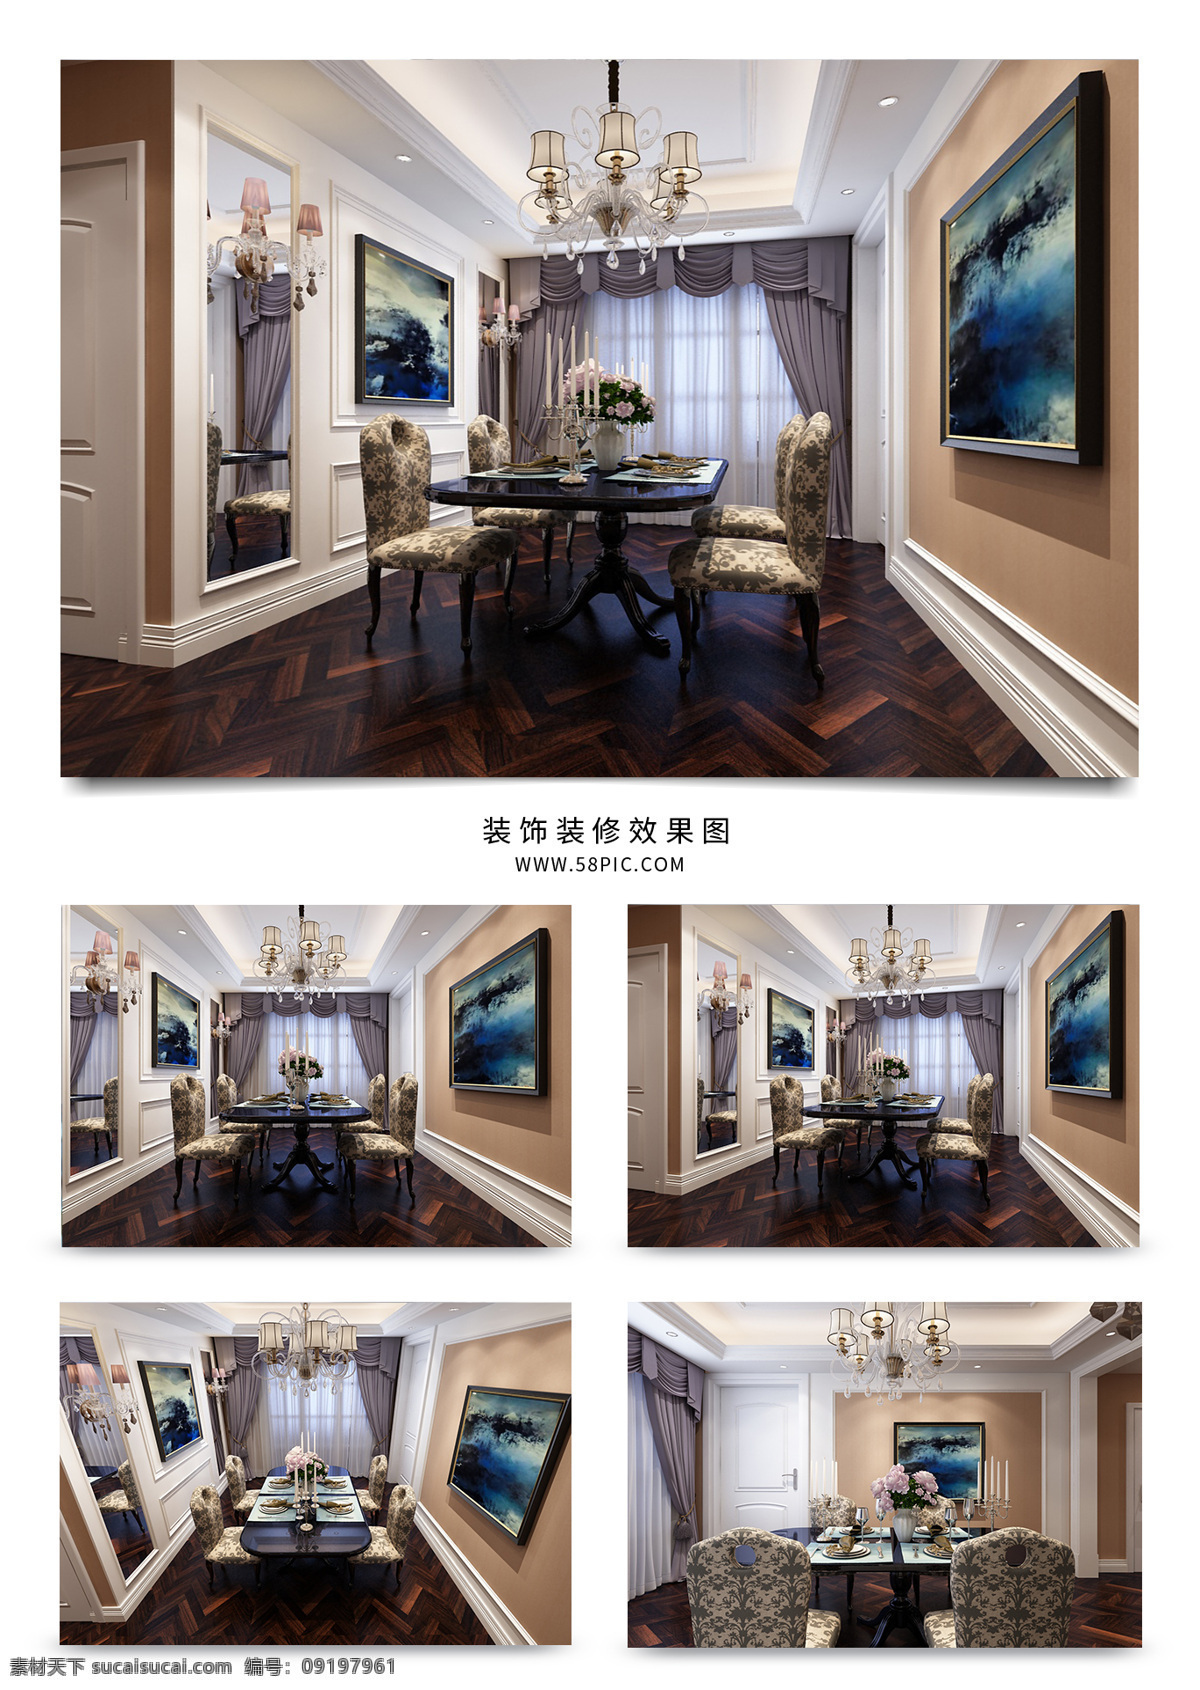 欧式 古典 餐厅 空间 装饰设计 实木地板 挂画 窗帘 壁灯 吊灯 餐椅组合 烤漆门